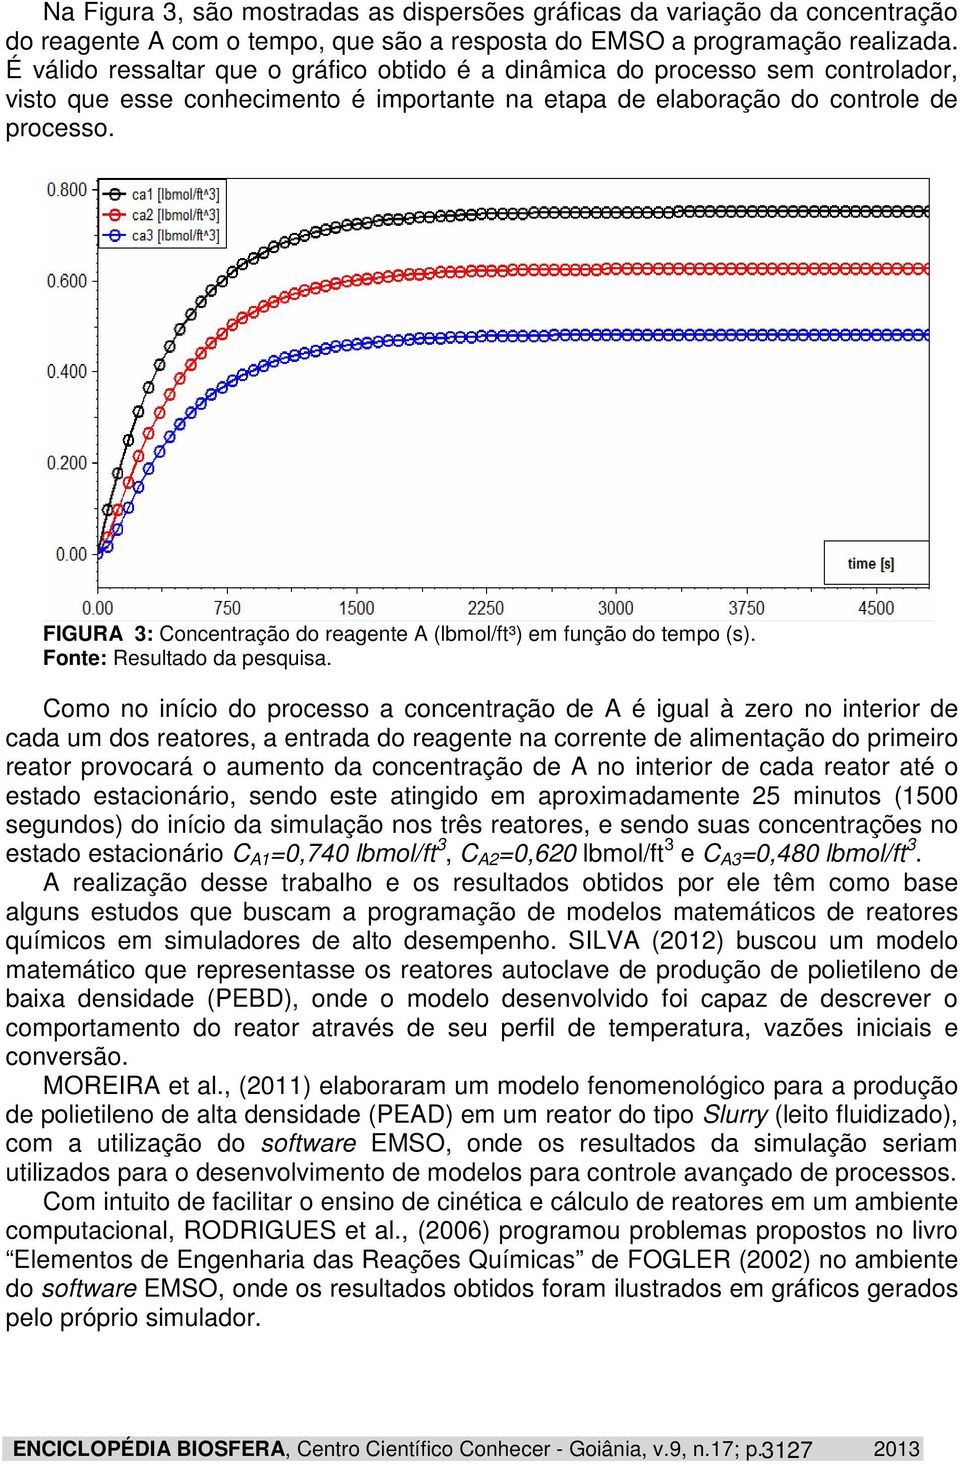 FIGURA 3: Concentração do reagente A (lbmol/ft³) em função do tempo (s). Fonte: Resultado da pesquisa.